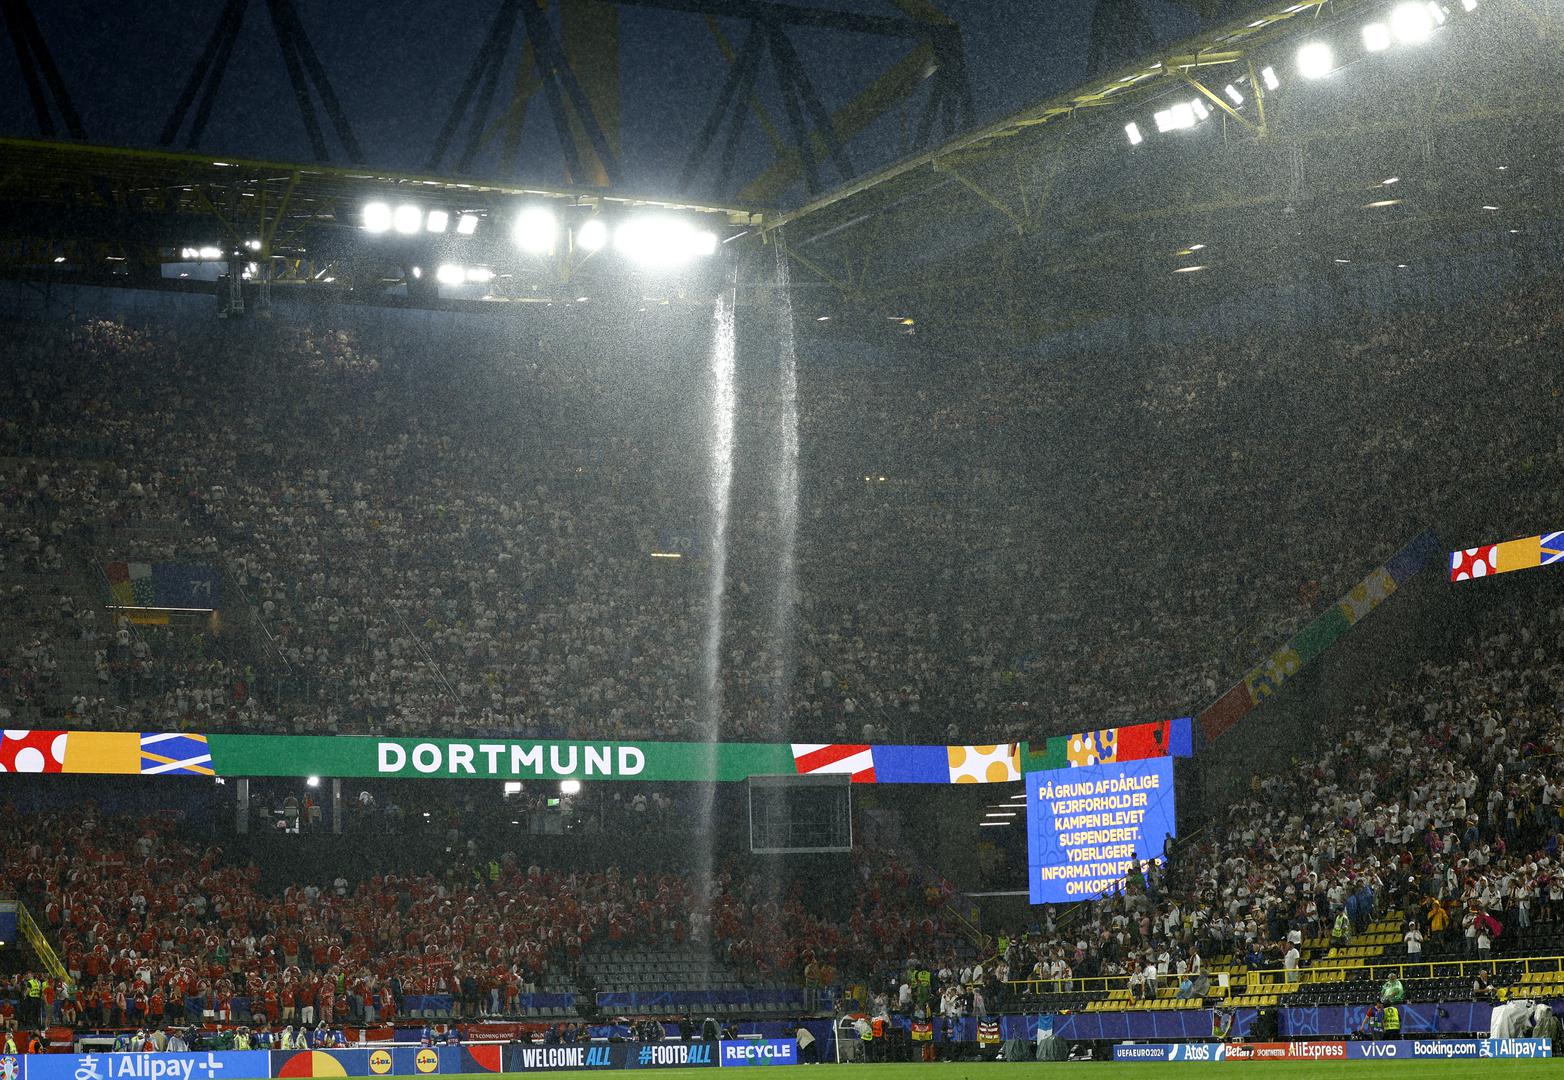 Nakon što se iznad BVB stadiona prolomila grmljavina i pojavila munja, sve to praćeno snažnim pljuskom, glavni sudac dvoboja, Englez Michael Oliver odlučio je povući igrače s travnjaka.